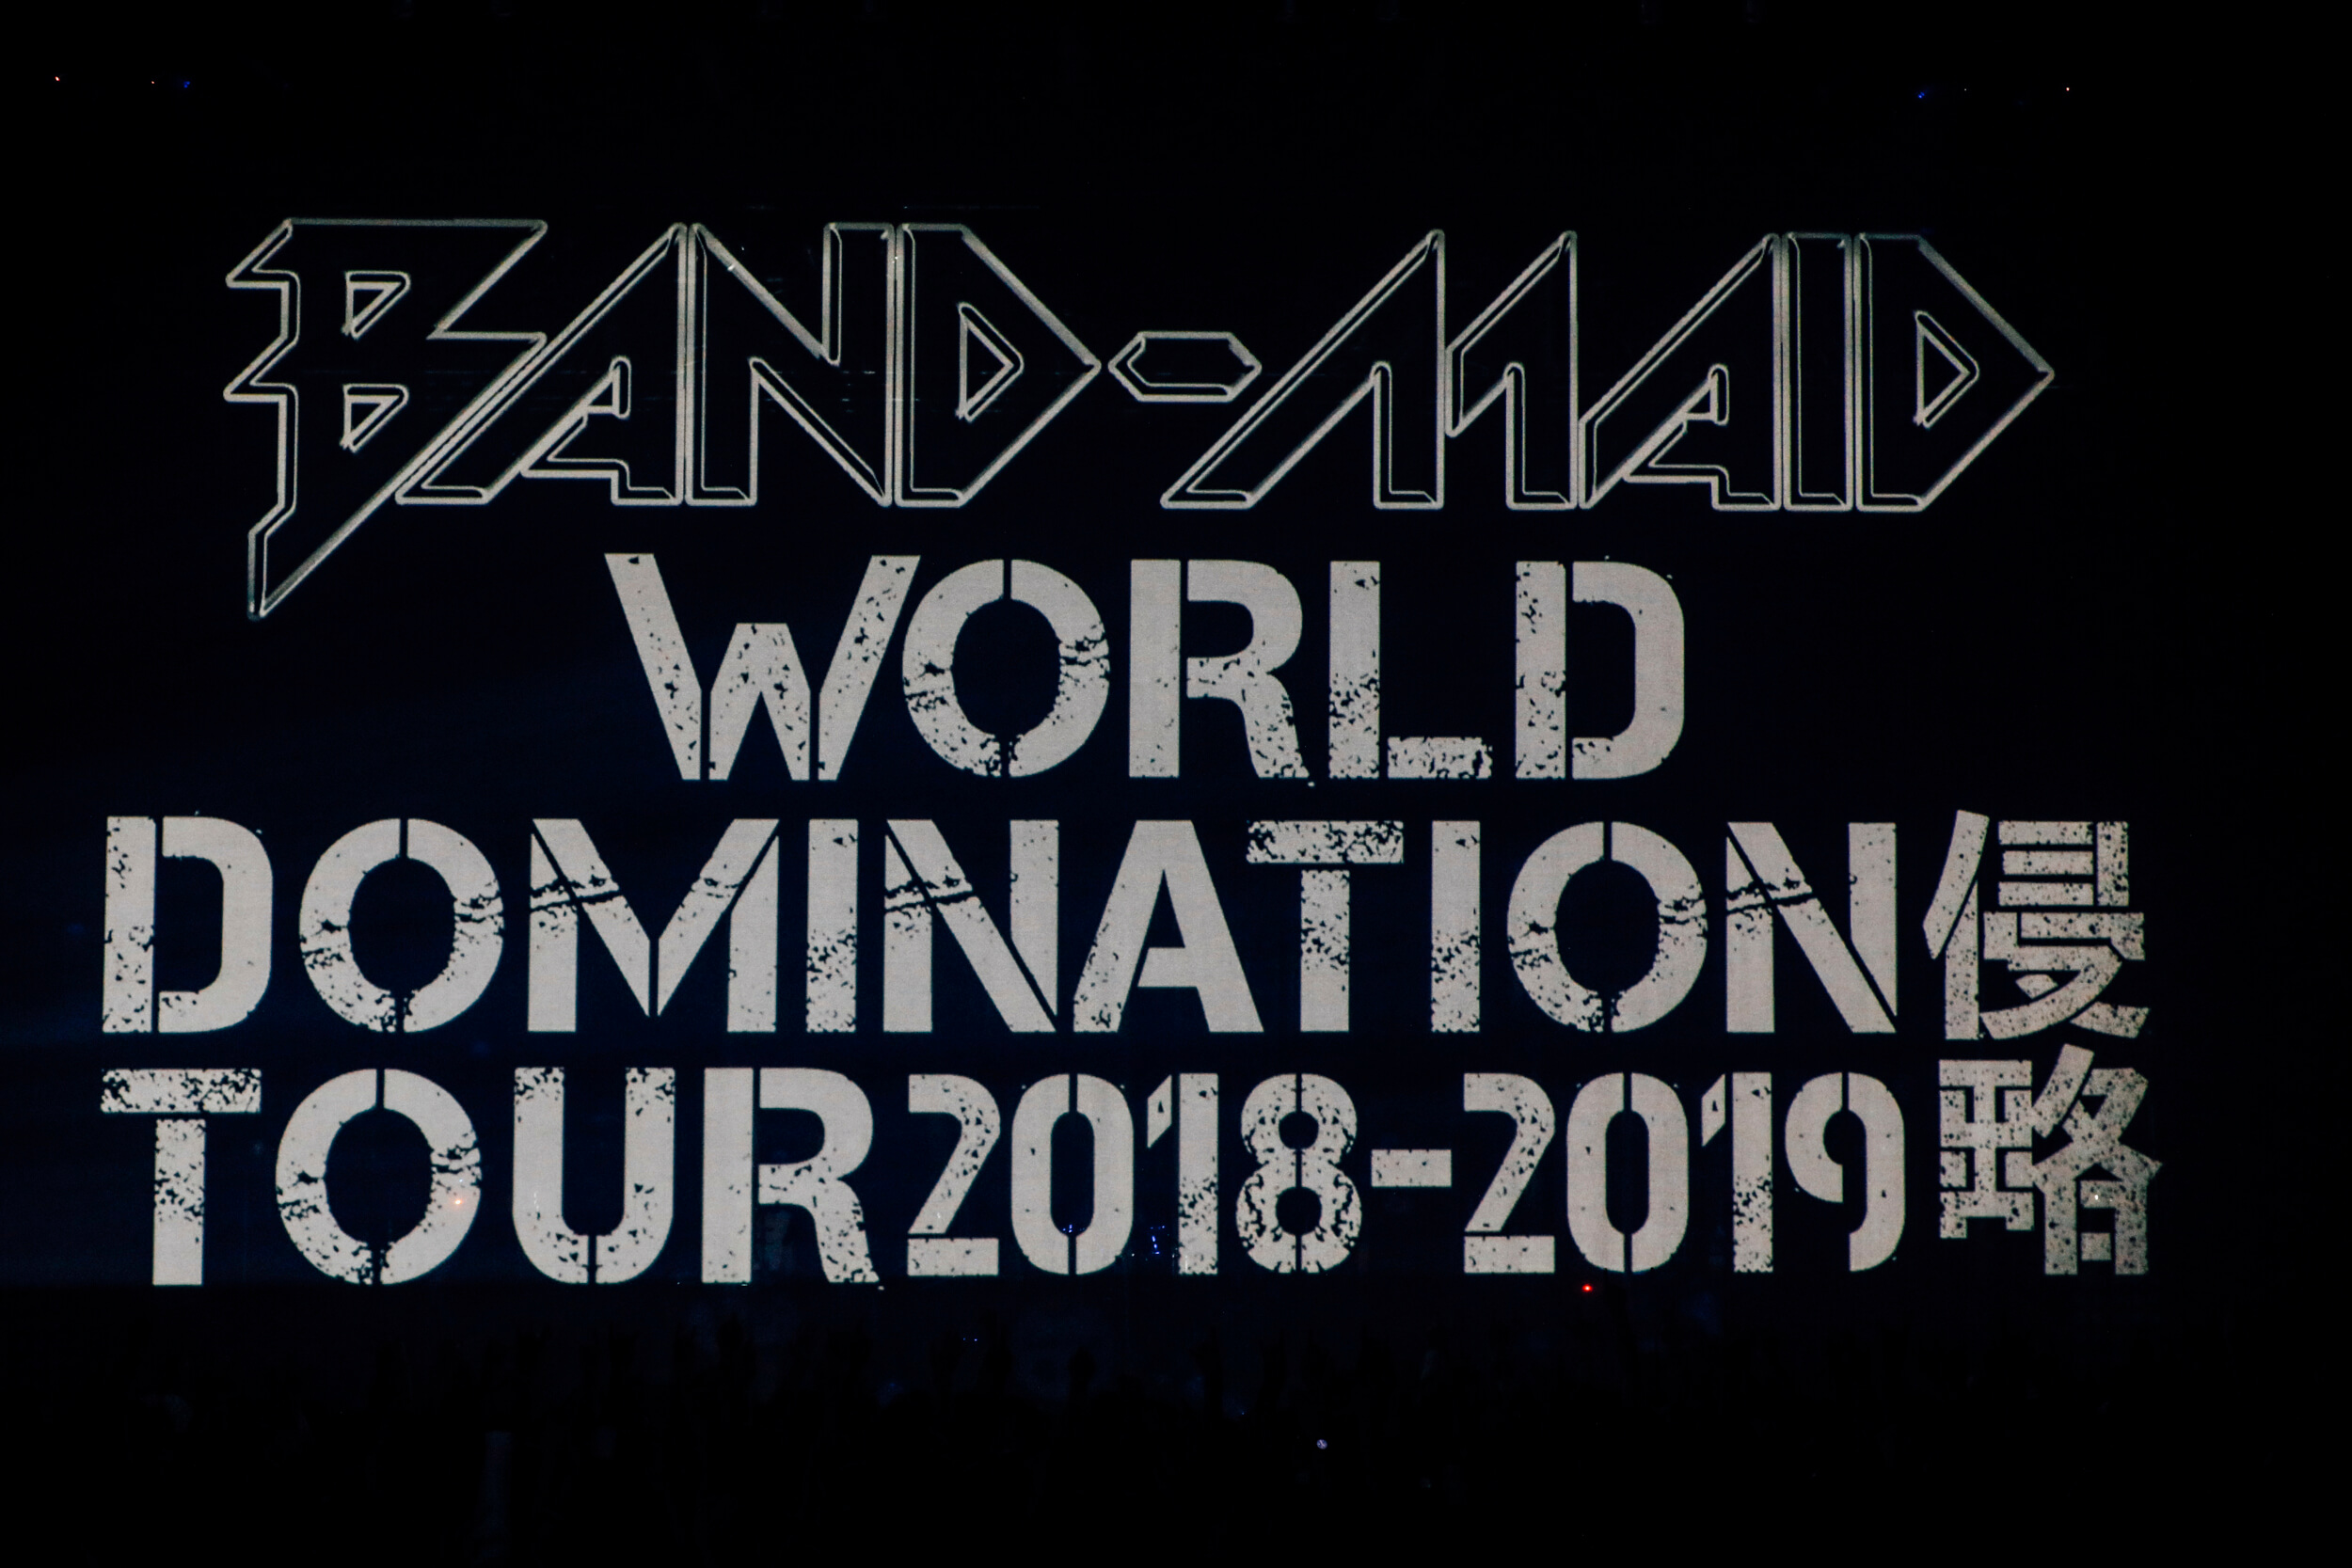 band-maid-world-domination-tour-2018-2019%e3%80%90%e4%be%b5%e7%95%a5%e3%80%911-2